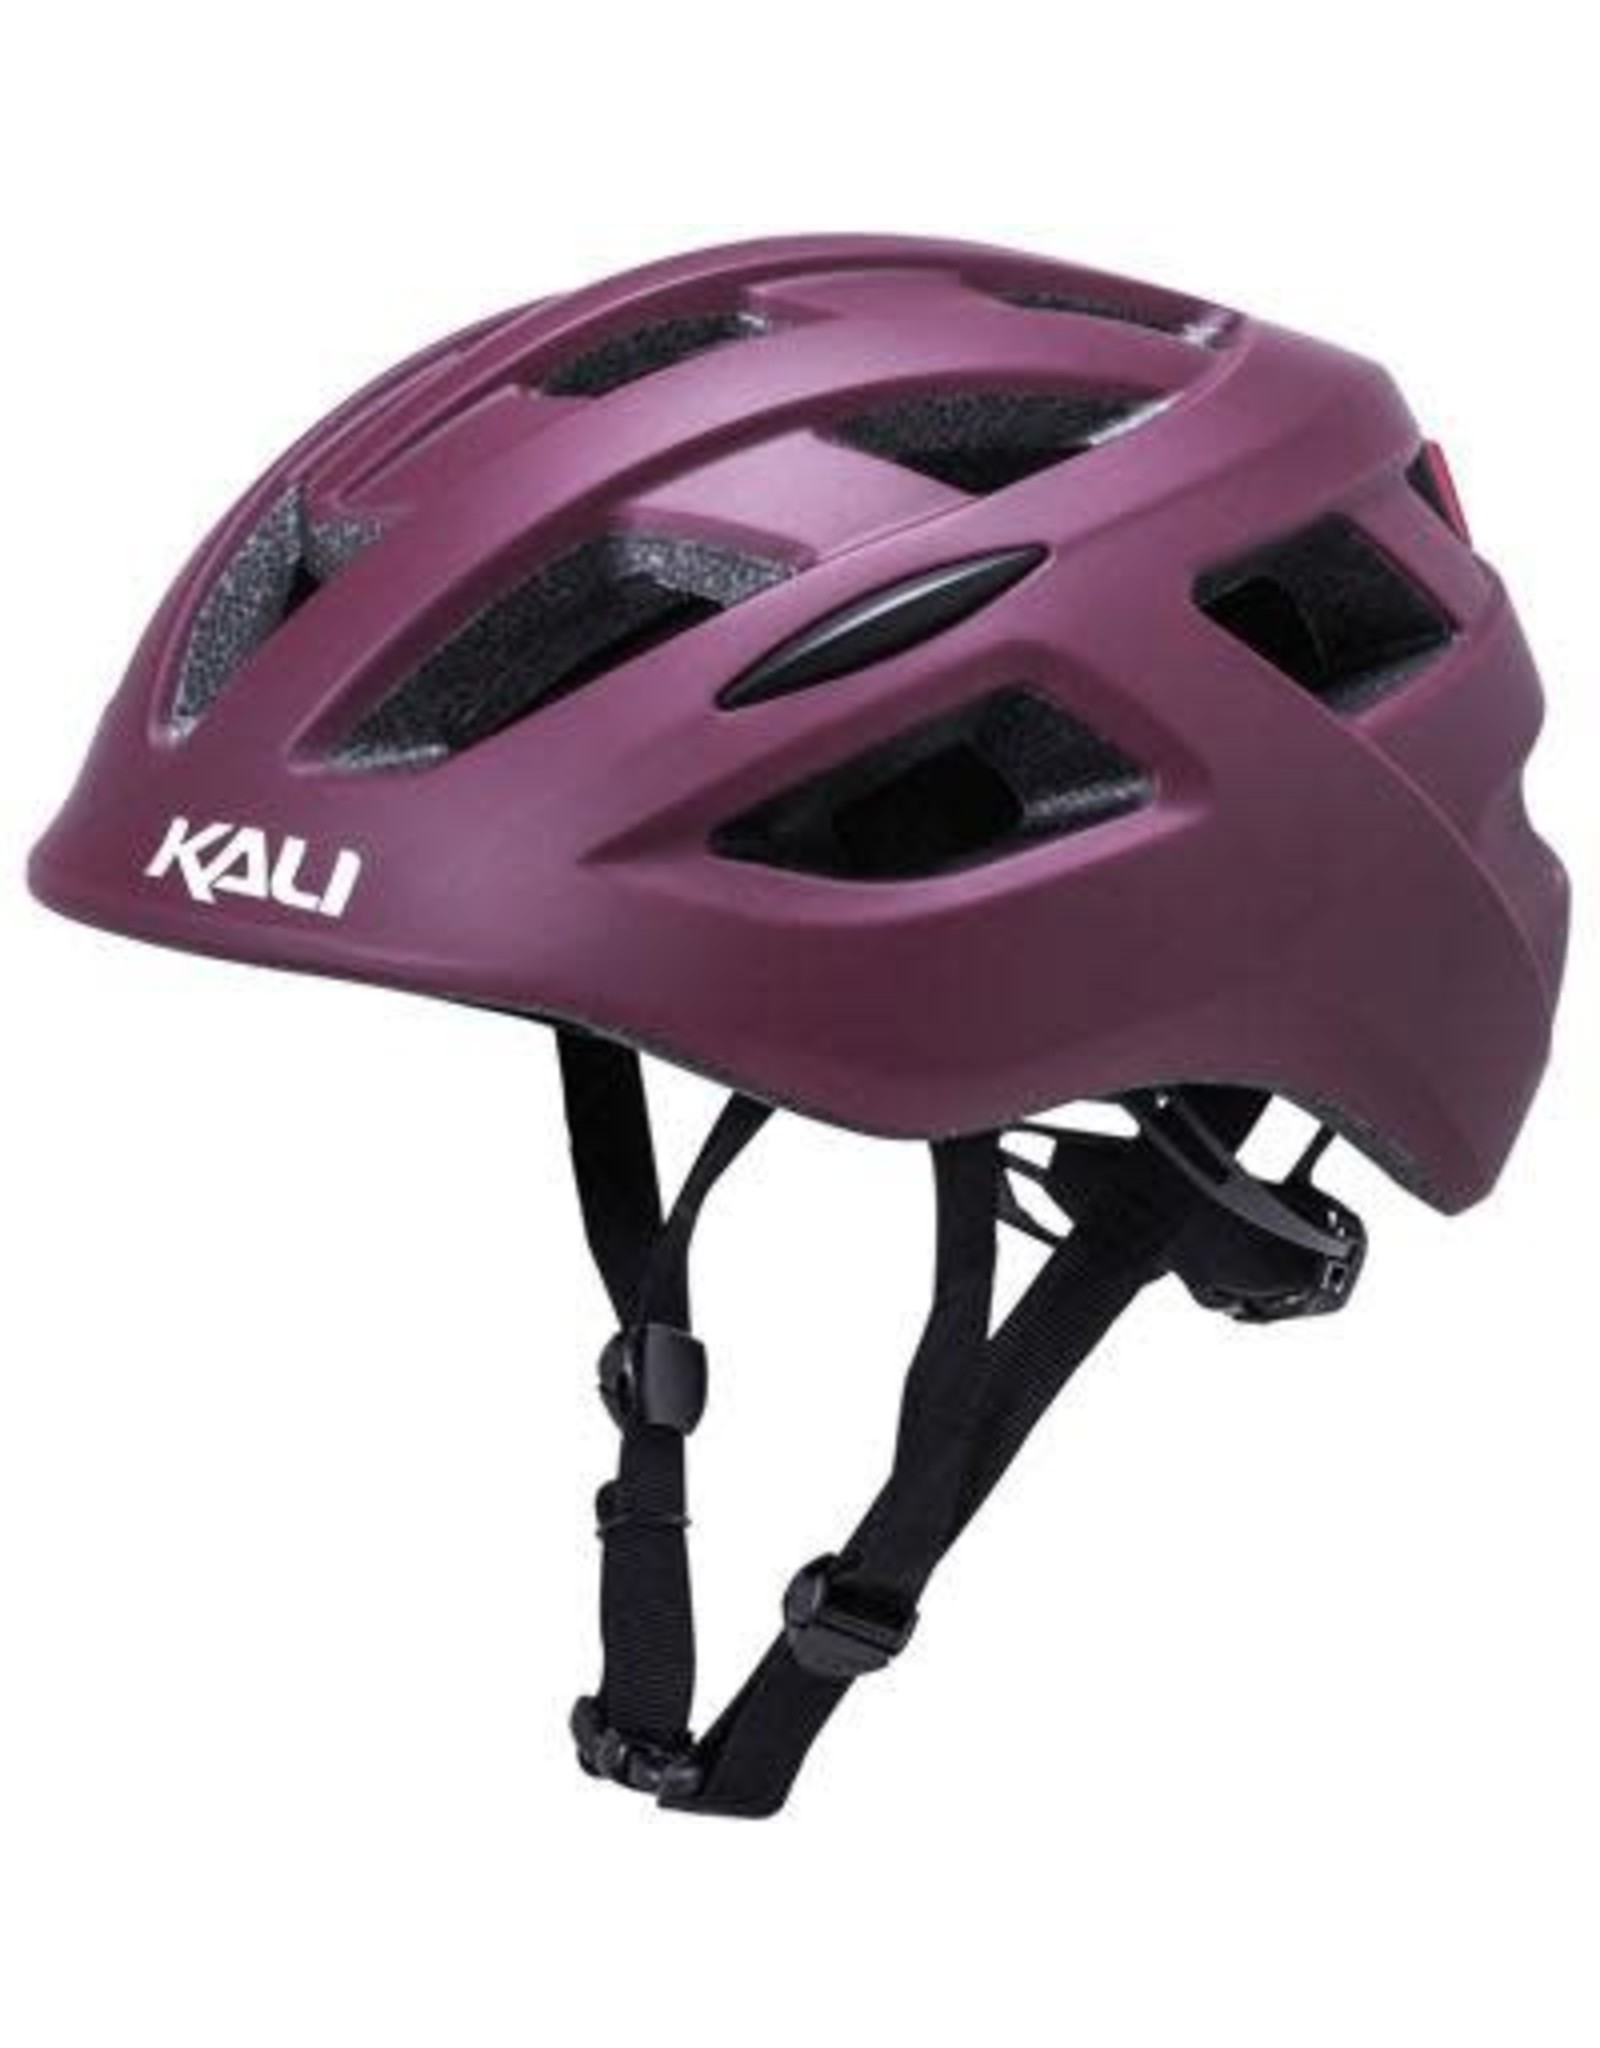 Kali Kali Central Helmet - Matte Berry, Large/X-Large